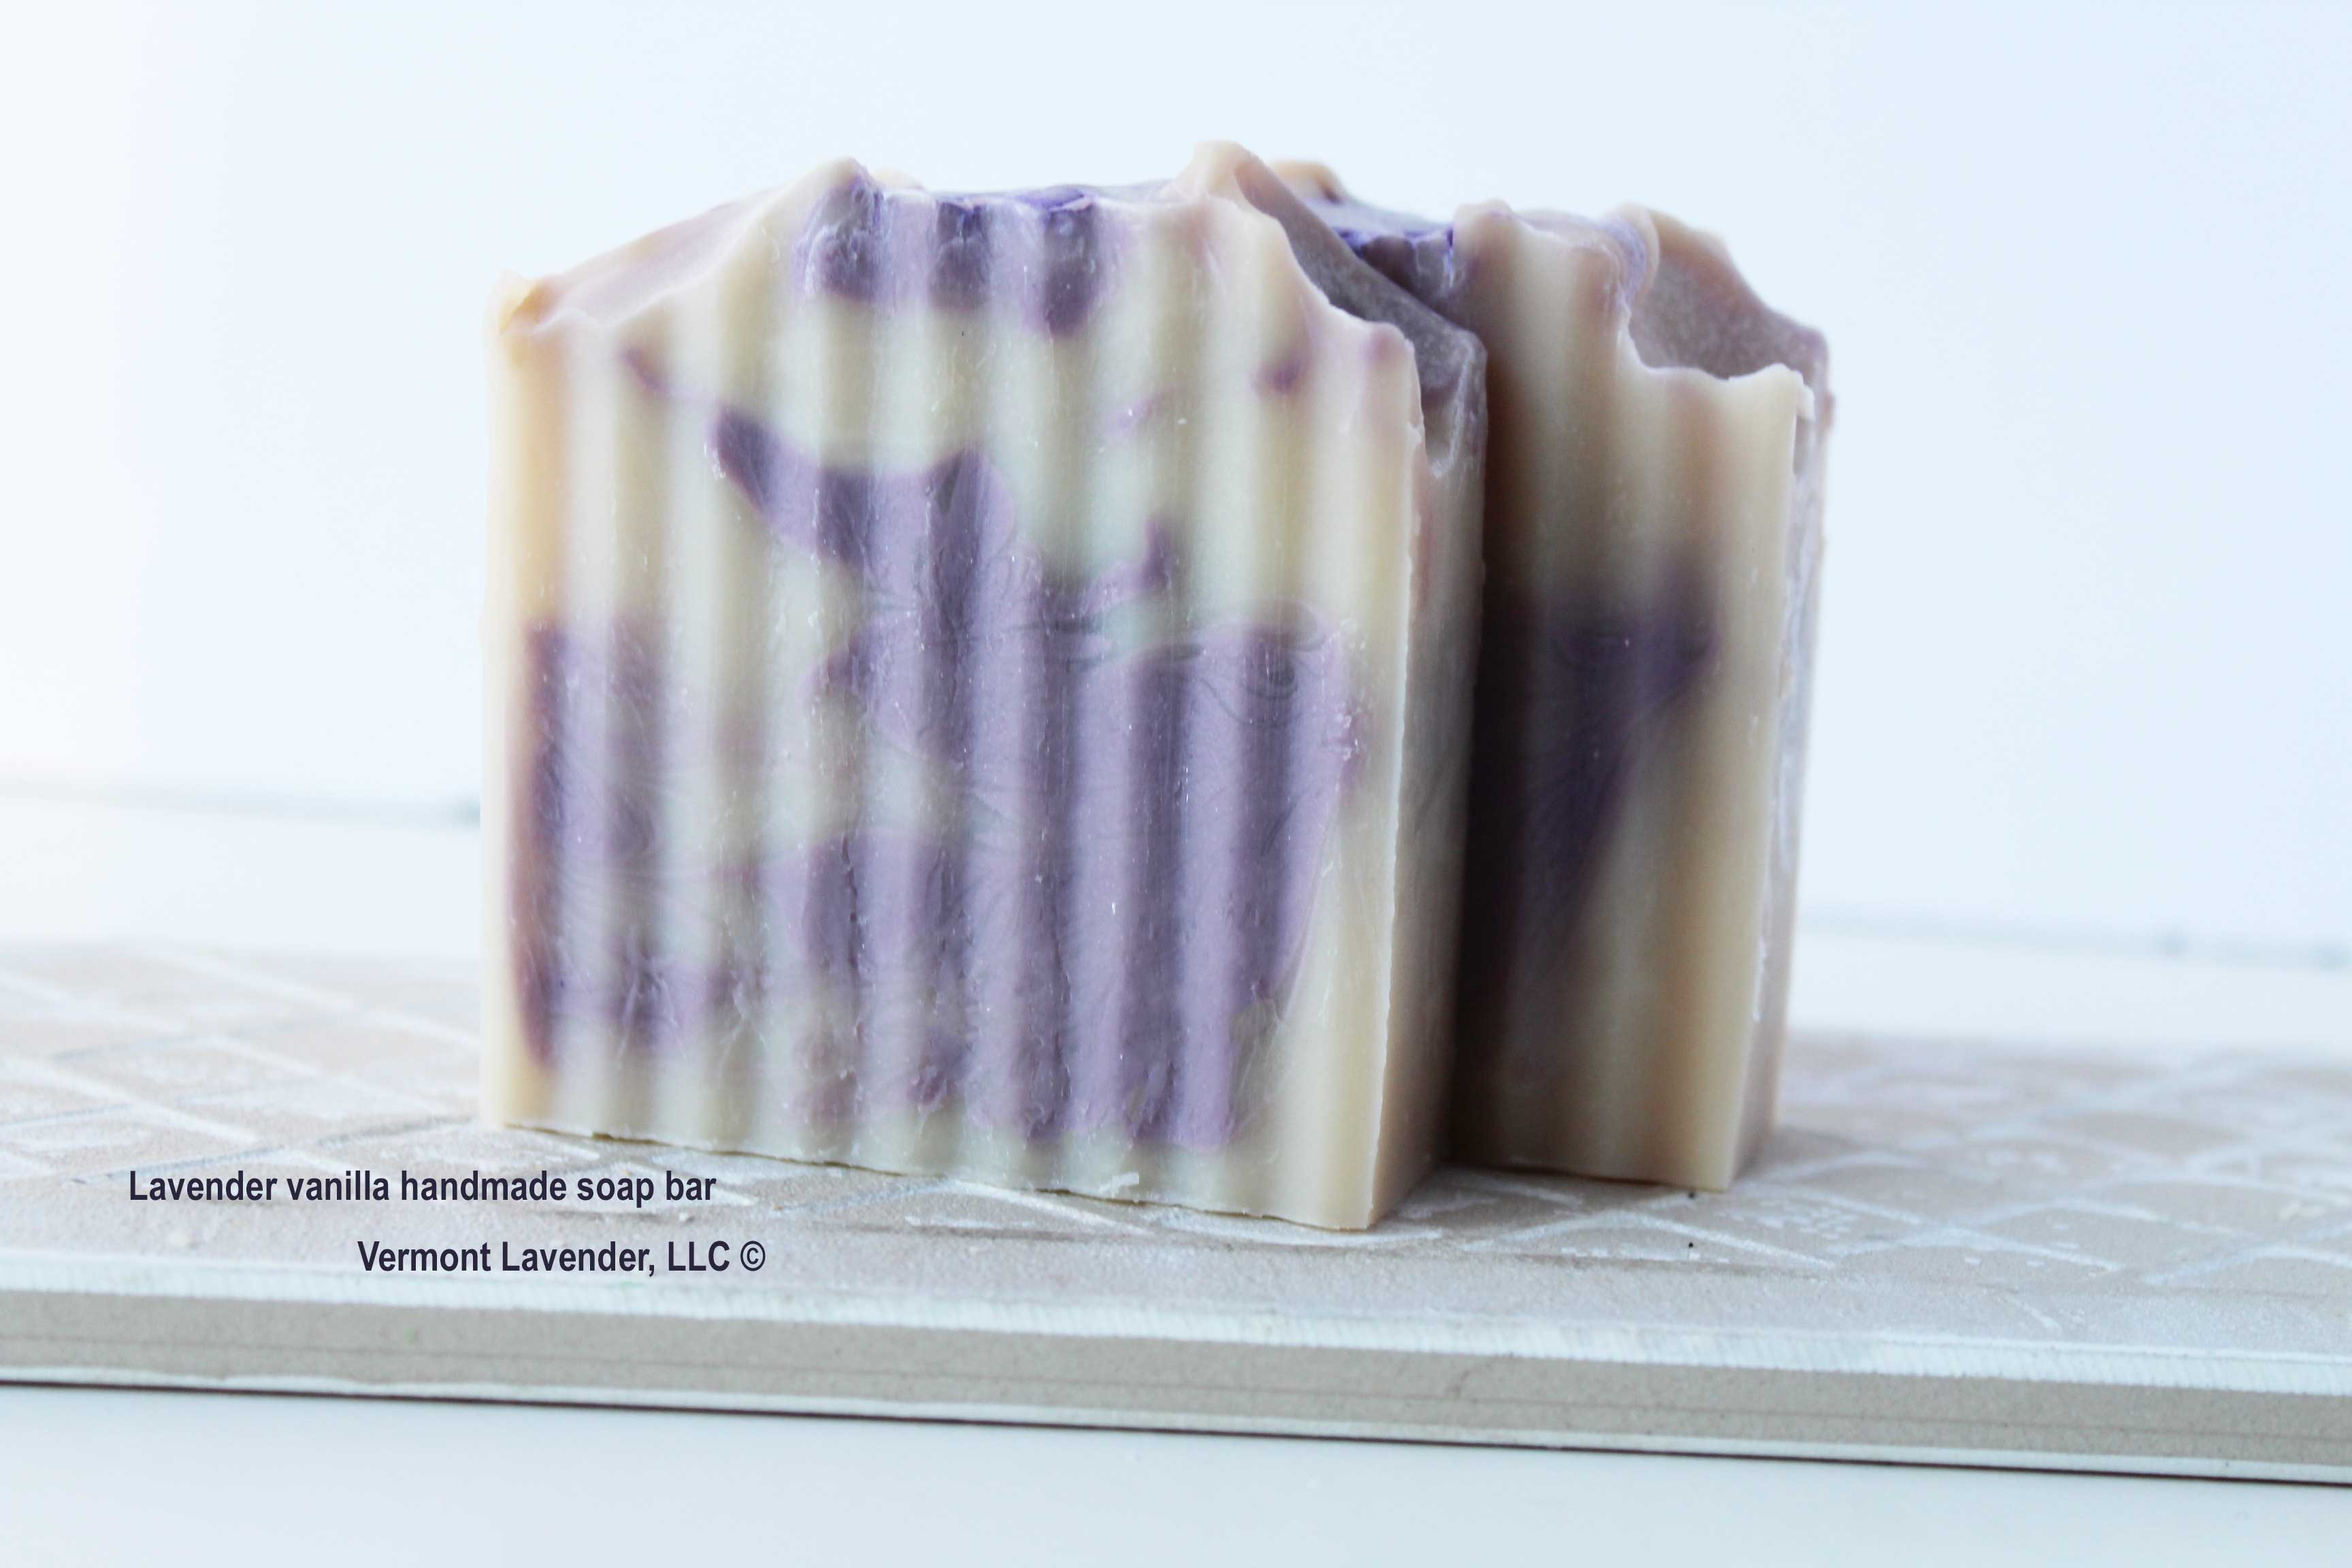 Lavender vanilla handmade soap